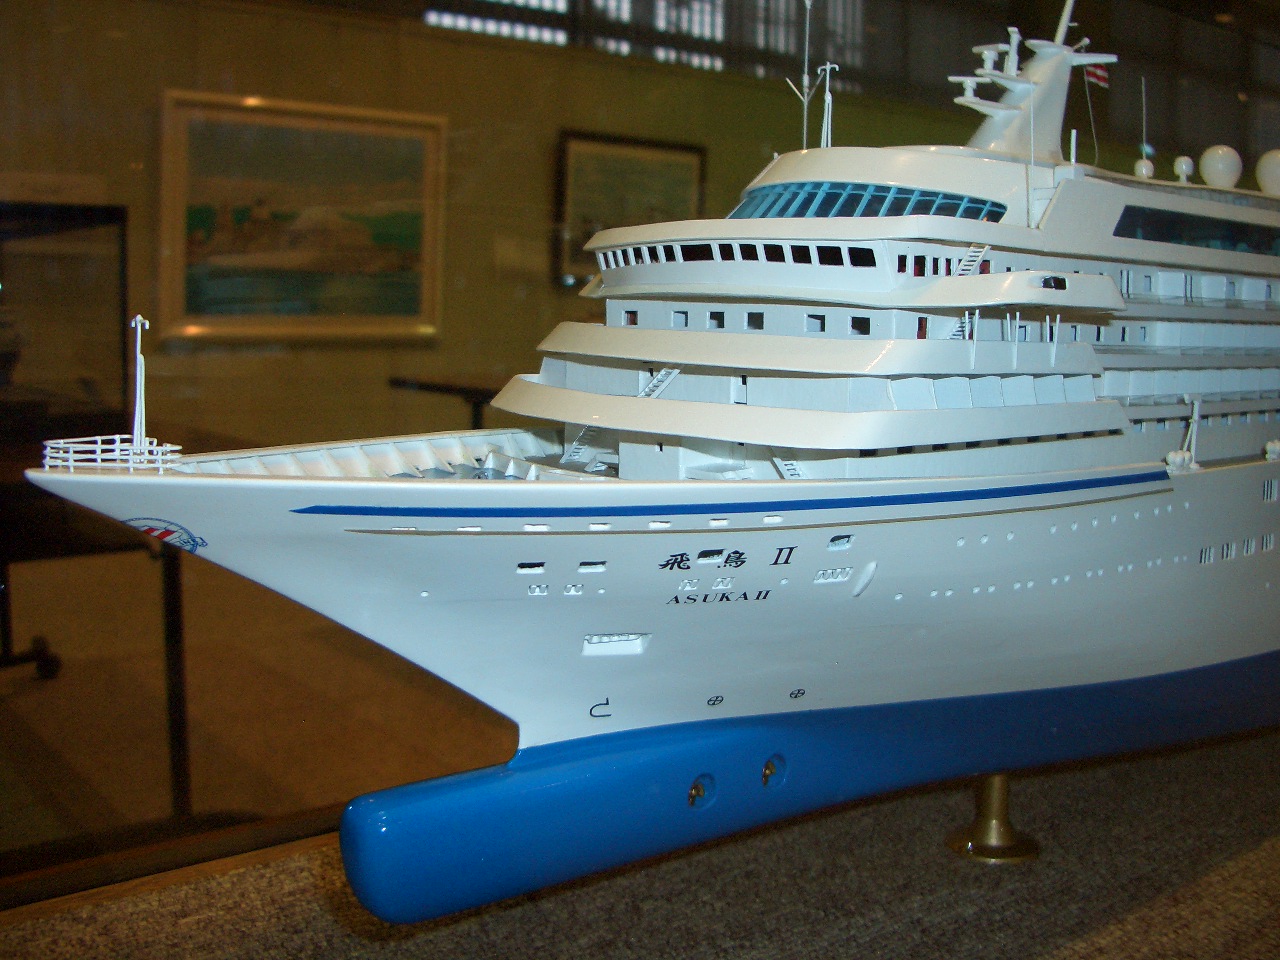 船舶模型がズラリ 第2回 船の作品展 07 12 12 生涯学習ブログ